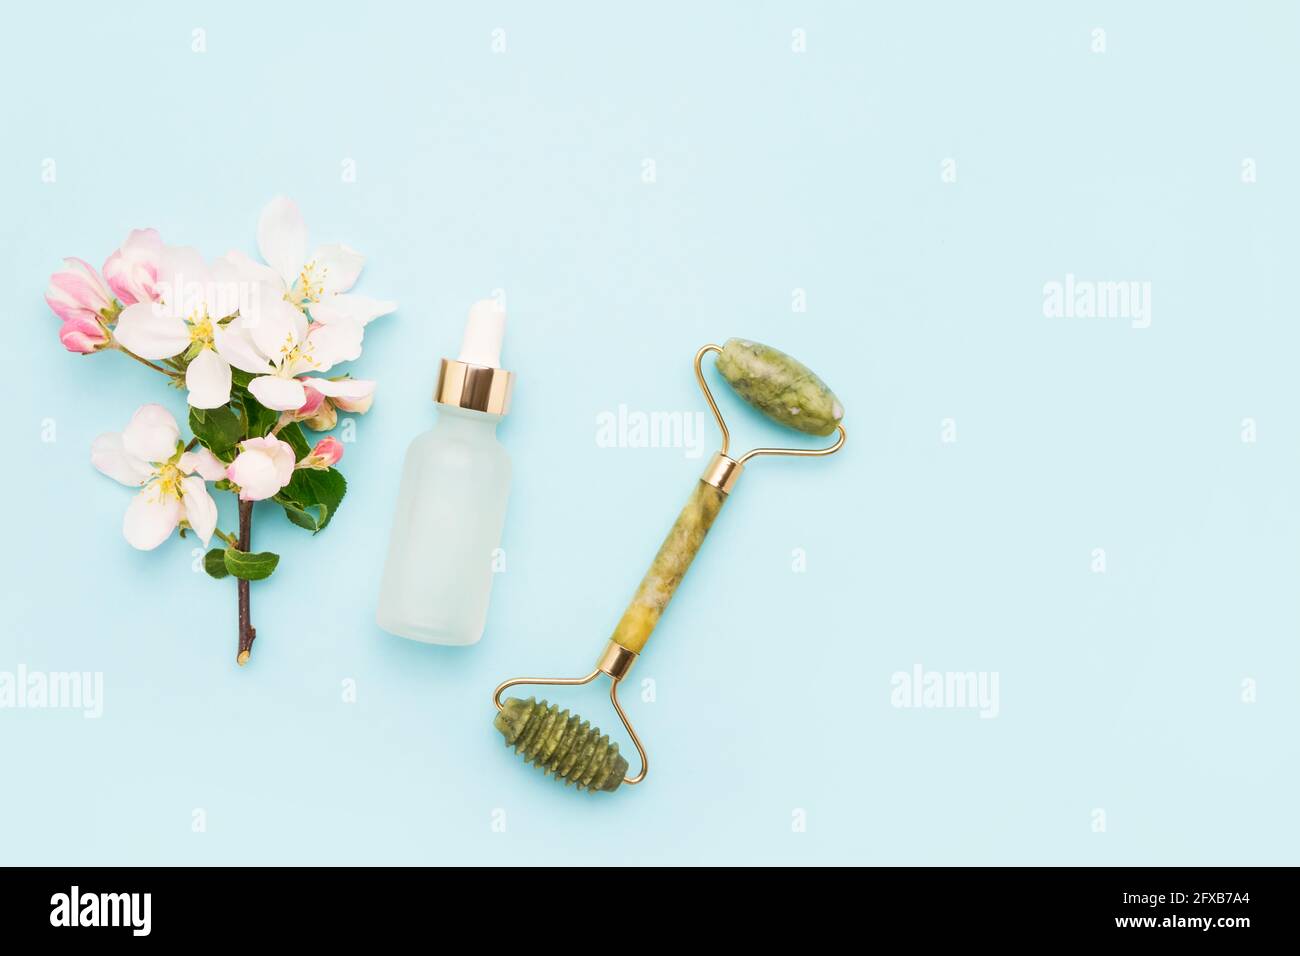 Jadewalze für Massage, Glasflasche für medizinische und kosmetische Zwecke und Apfelblütenblumen auf hellblauem Hintergrund. SPA-Konzept. Bis Stockfoto